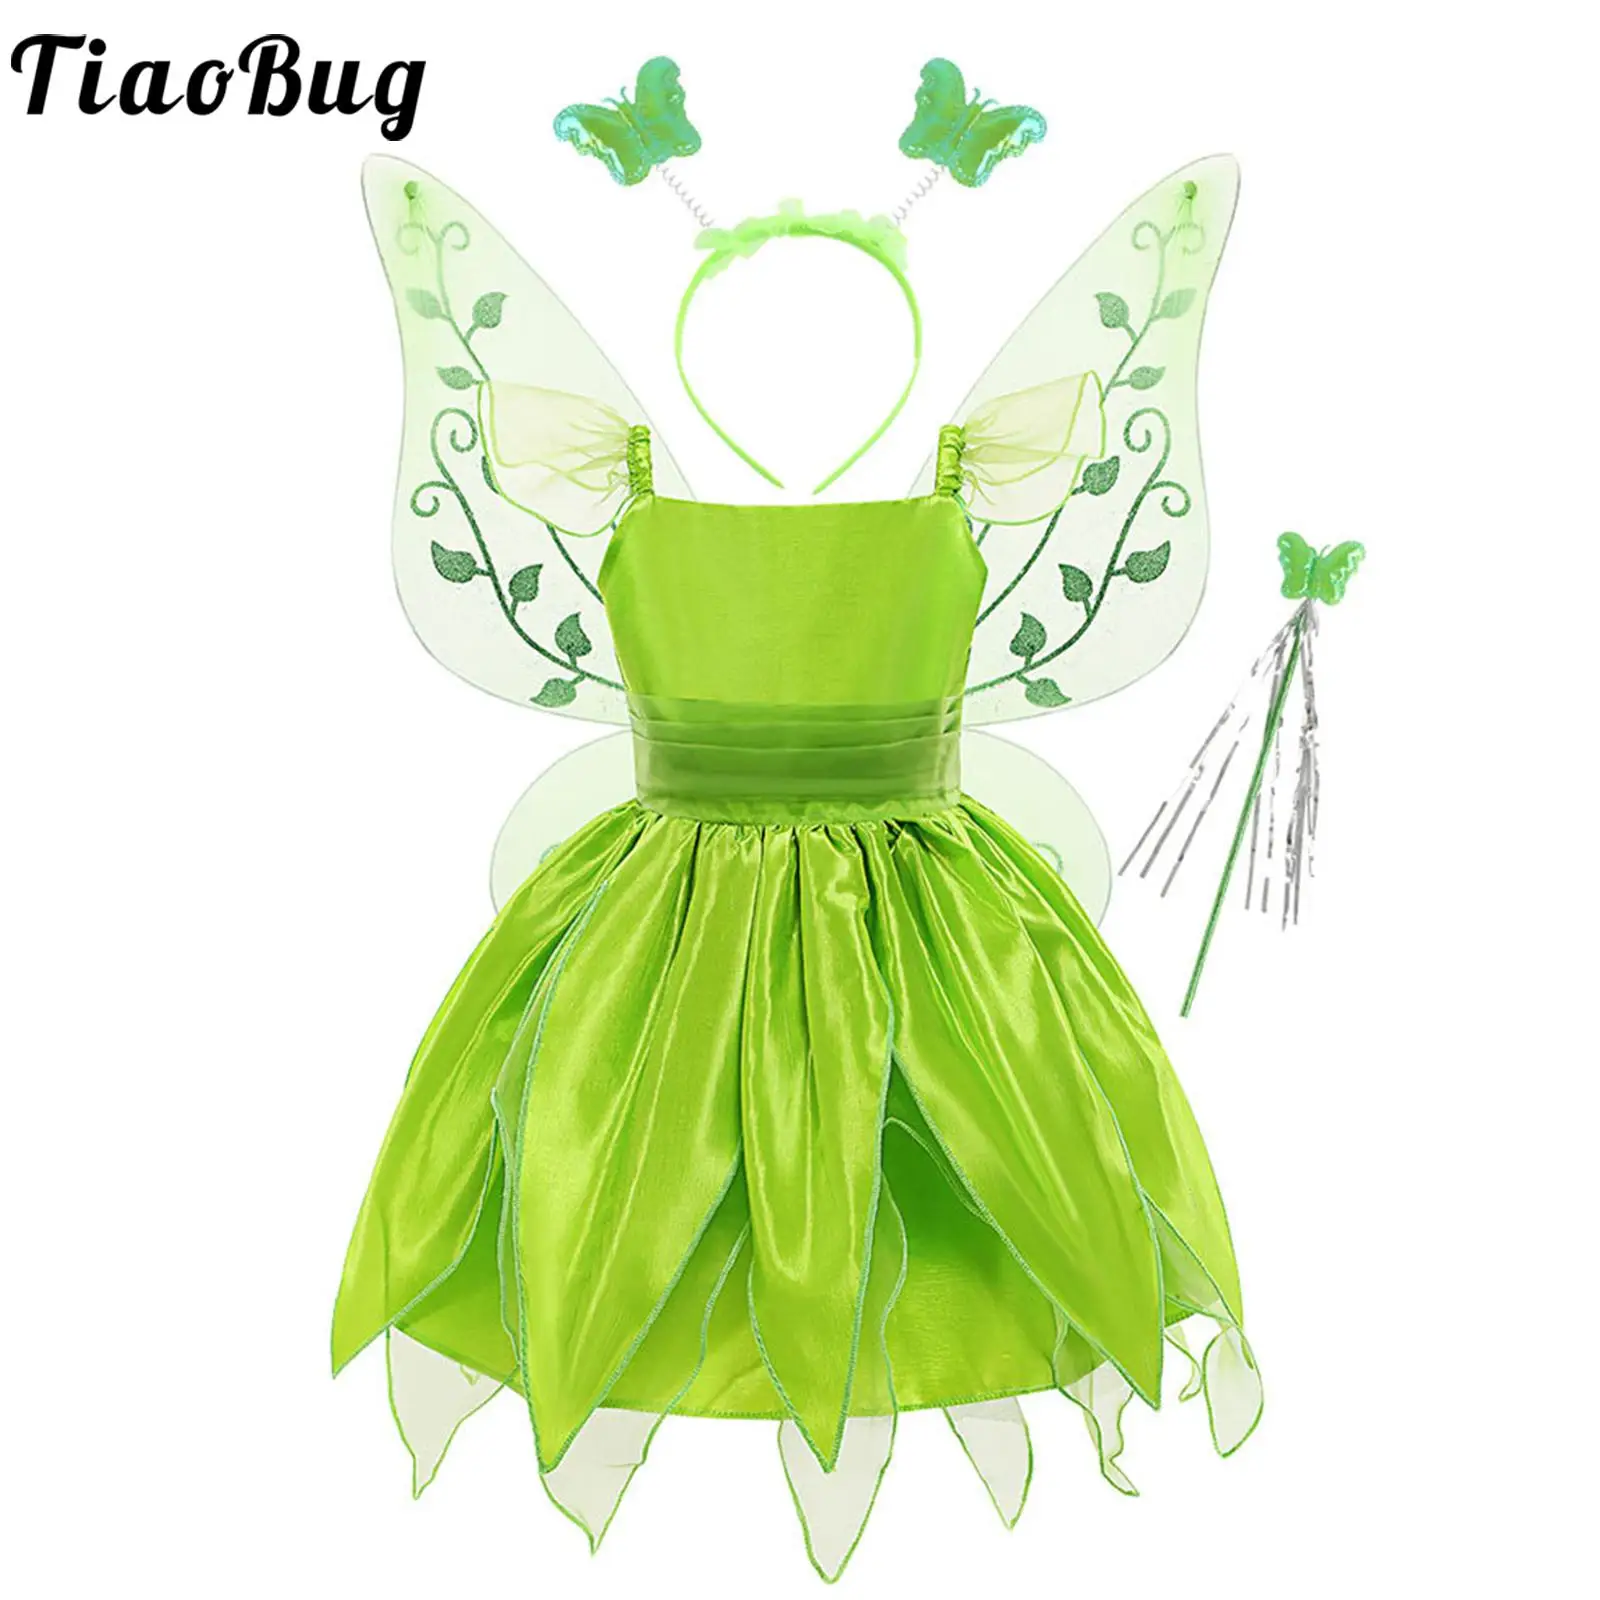 Зеленый детский костюм принцессы Динь-динь для девочек, платье для косплея эльфа без рукавов с обручем для волос, набор крыльев-палочек для девочки от 2 до 10 лет